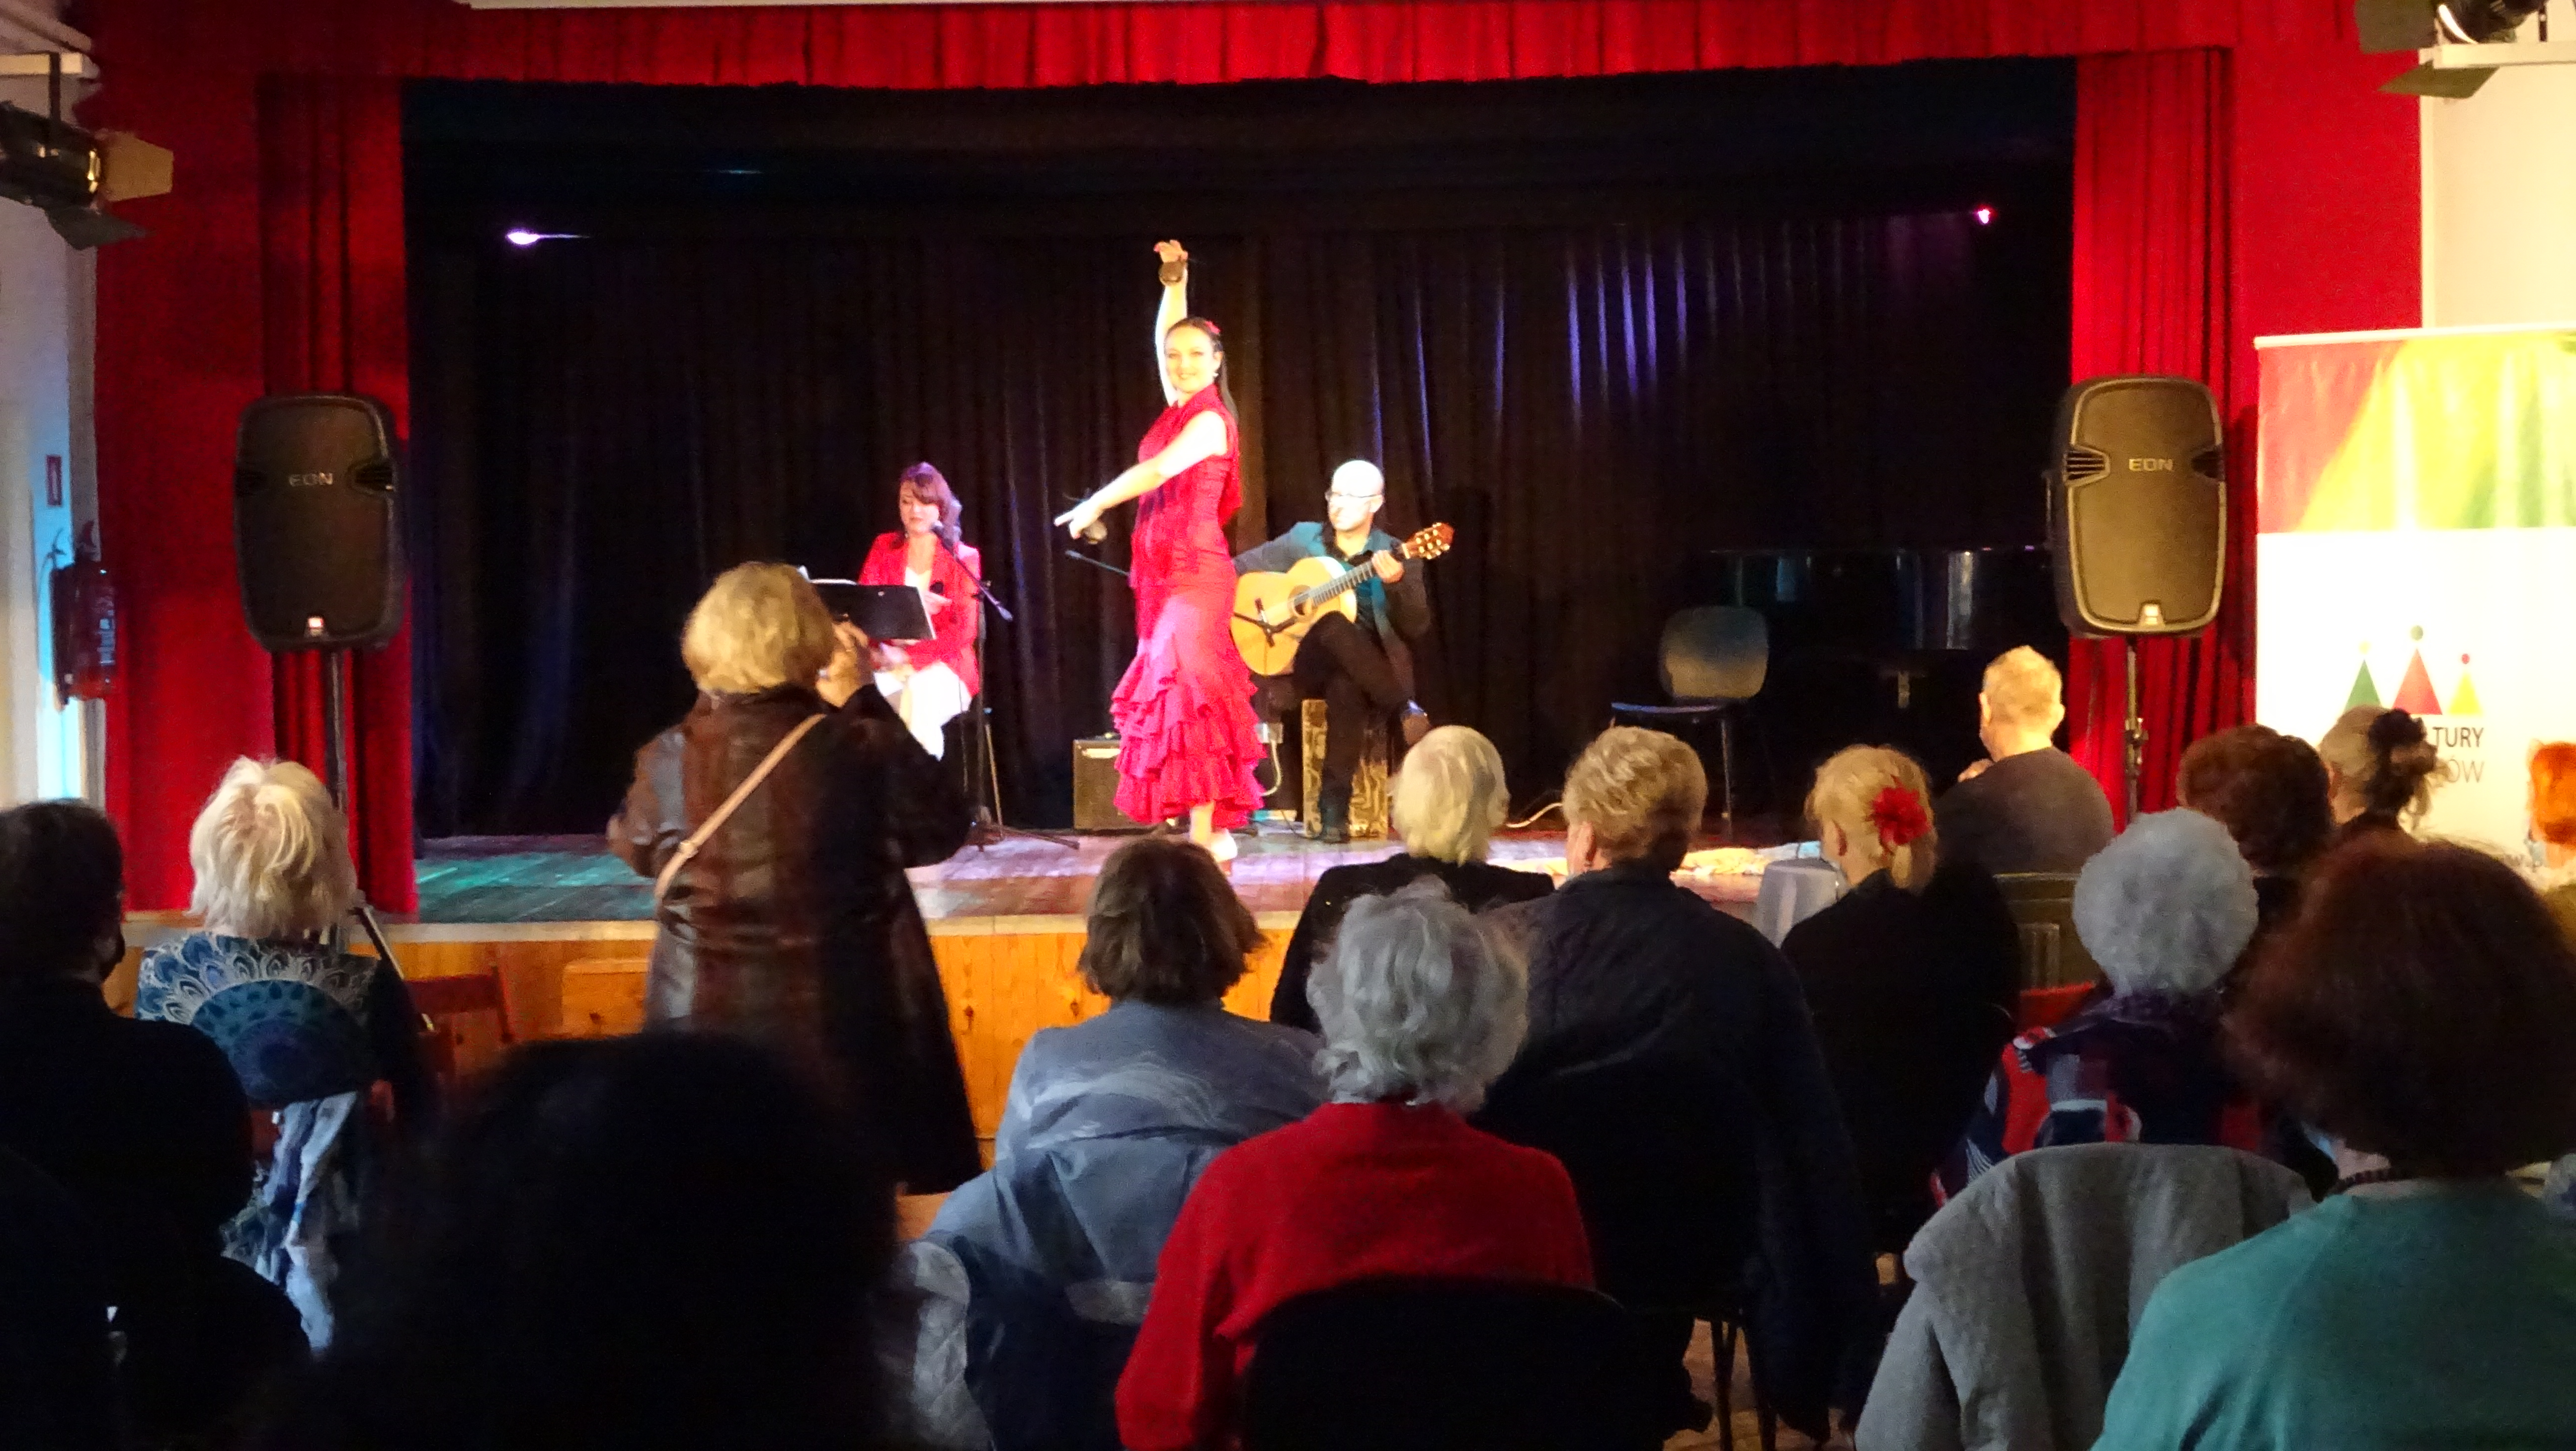 Wieczór Hiszpański dla seniorów. Przed sceną widzimy publiczność trwa pokaz tańca Flamenco. Na scenie w czerwonej sukni, z uniesioną jedną ręką, z drugą ręką przed sobą zastygła tancerka. Za nią siedzi wokalistka oraz gitarzysta.